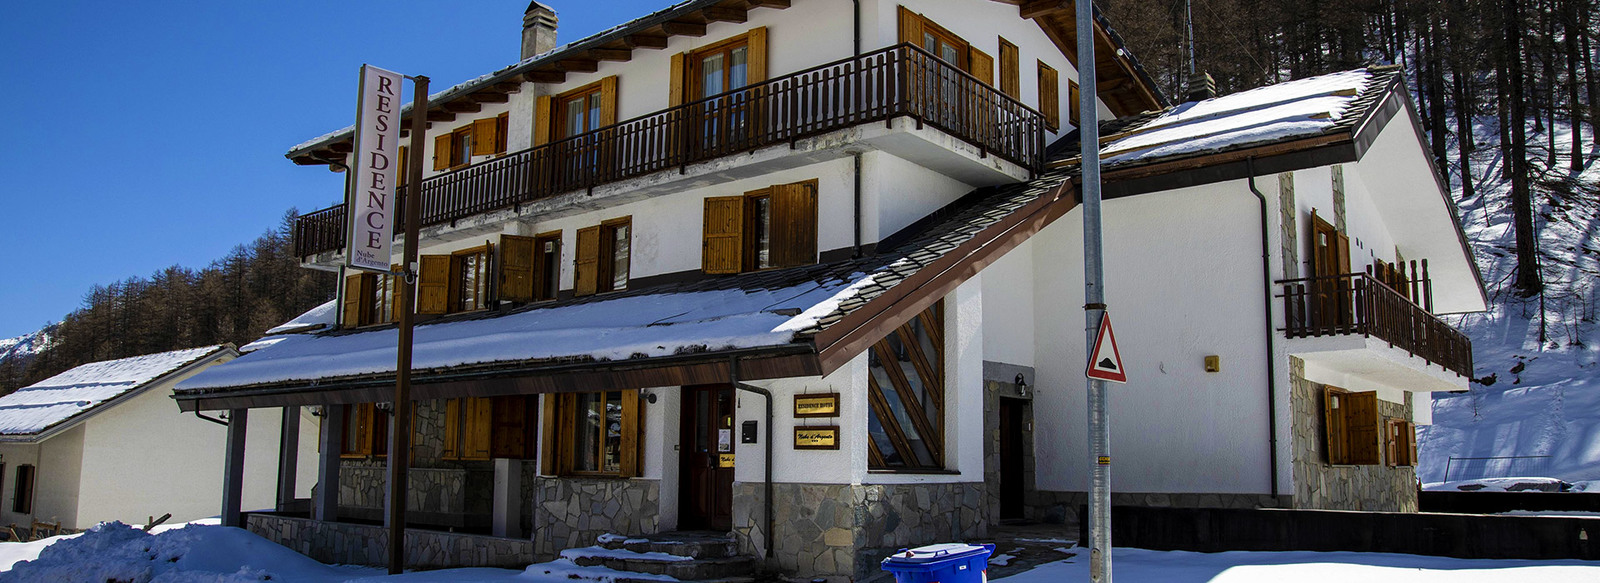 Appartamenti in stile alpino